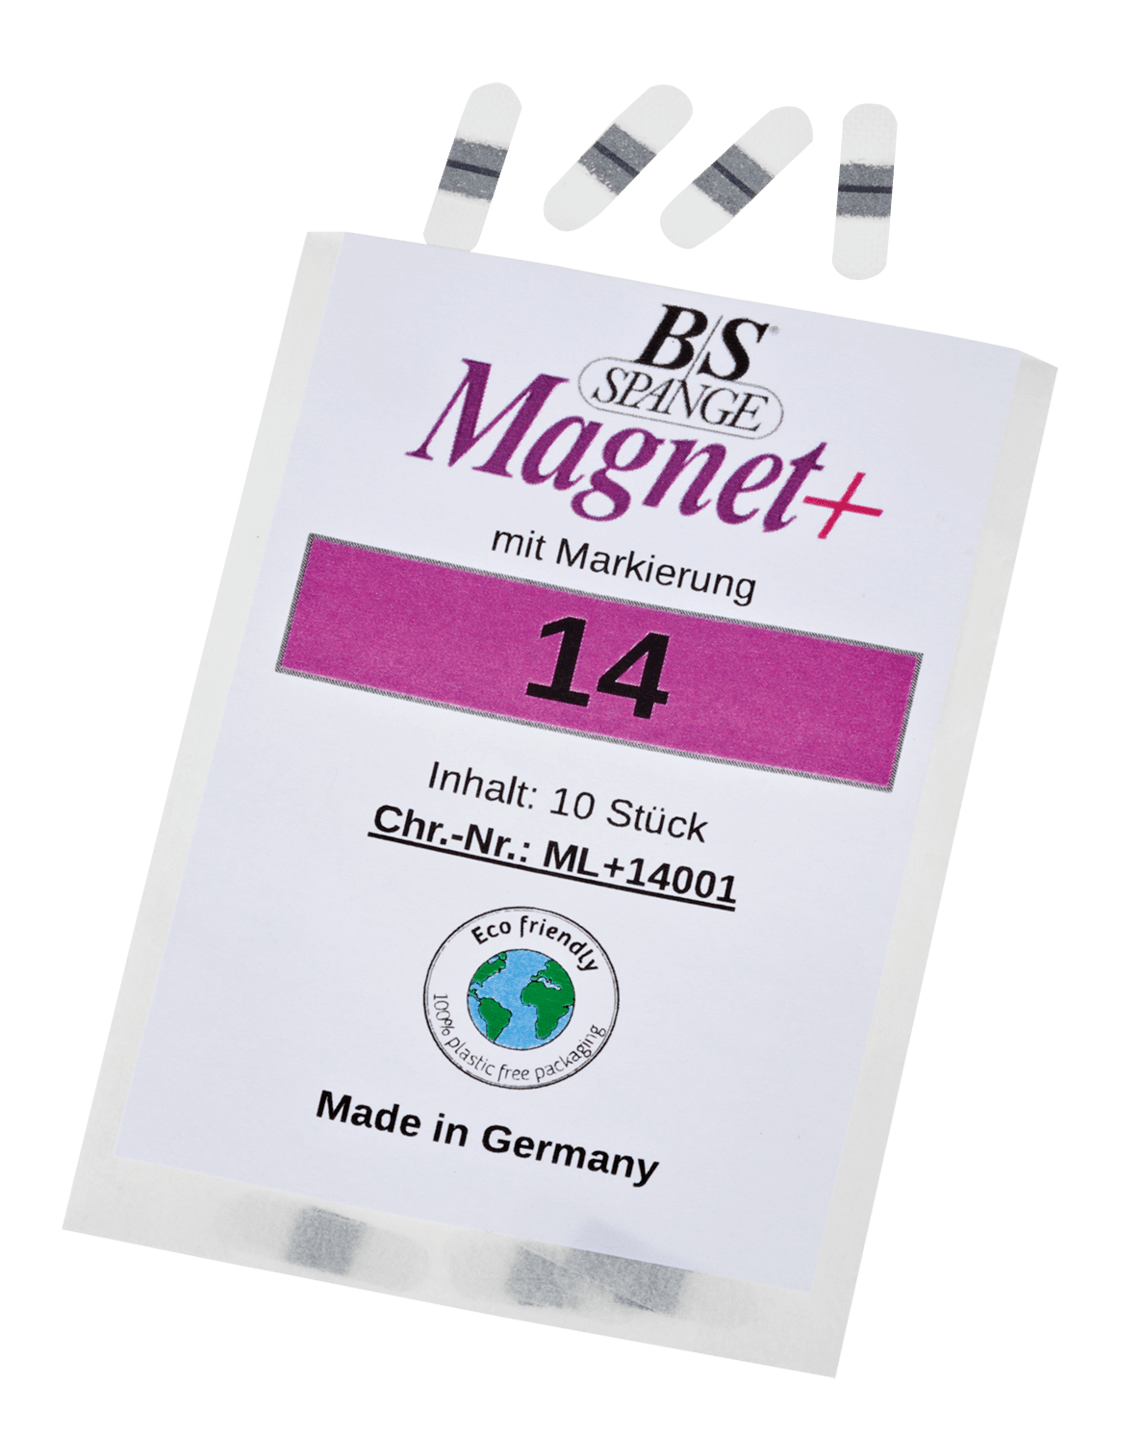 B/S - Magnet+ Spange mit Markierung